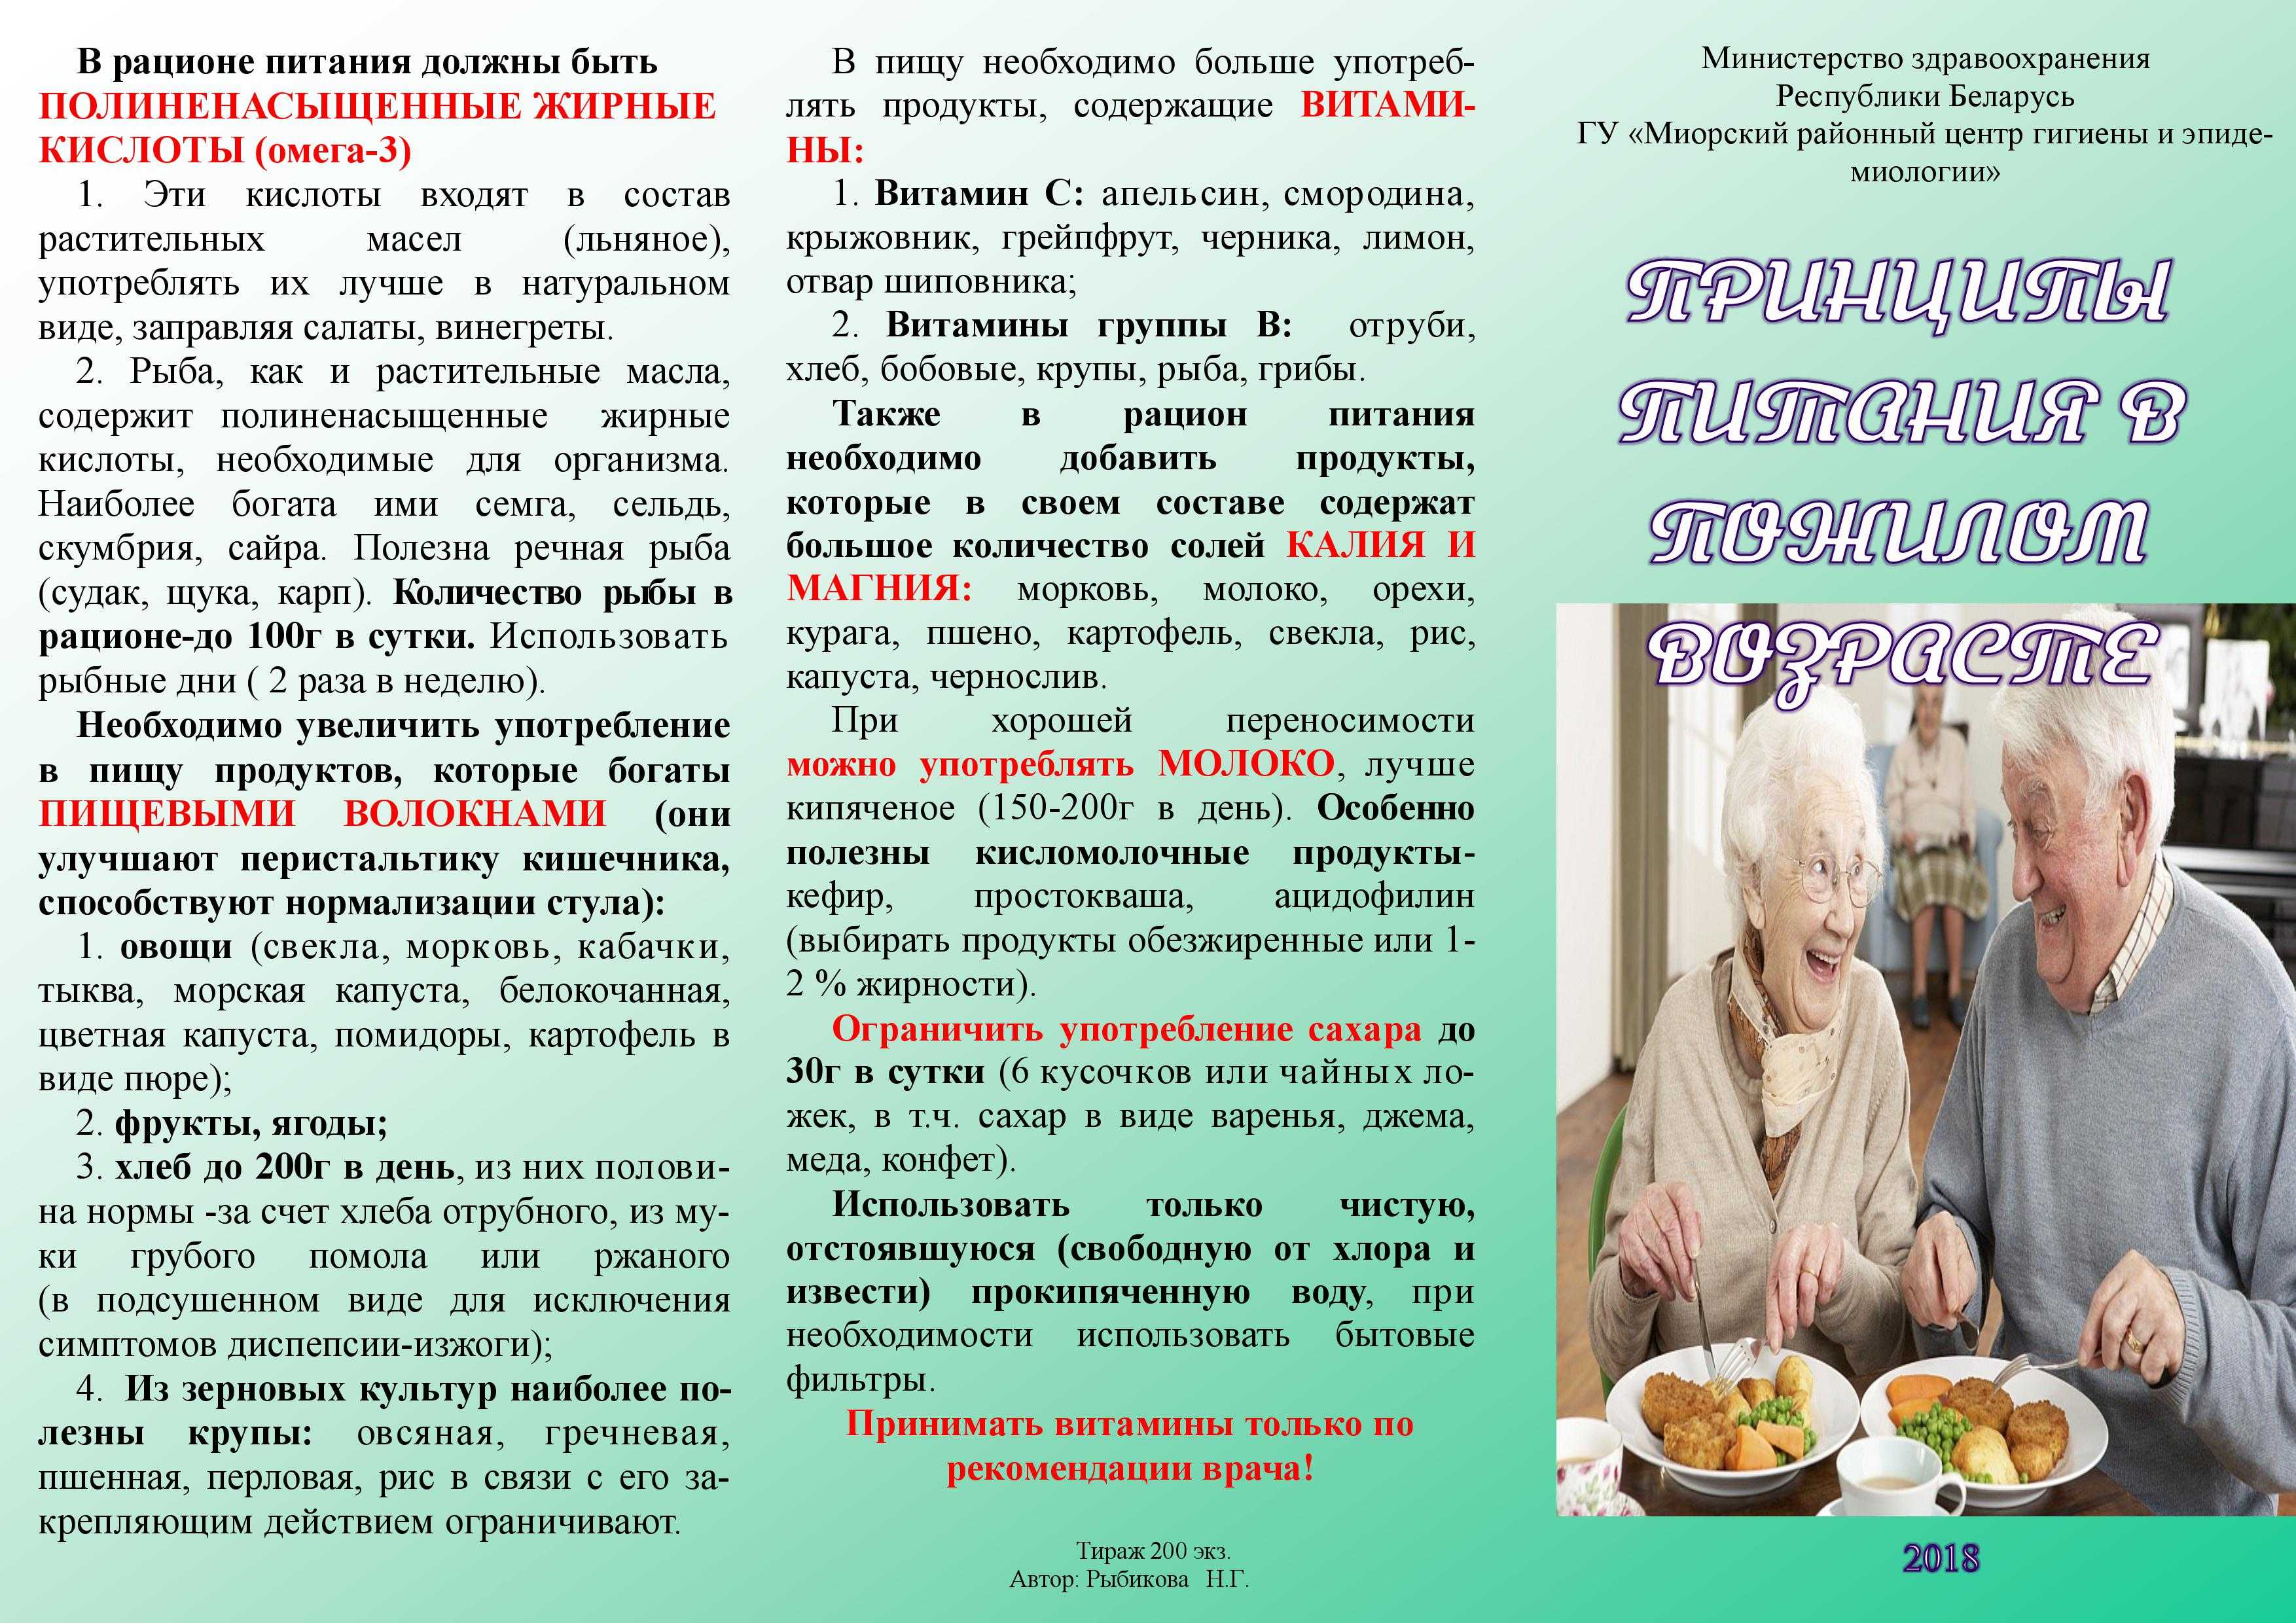 Диета женщины после 60. Питание пожилых людей рекомендации. Рекомендации по питанию пожилого возраста. Питание пожилых людей памятка. Советы по питанию для пожилых людей.